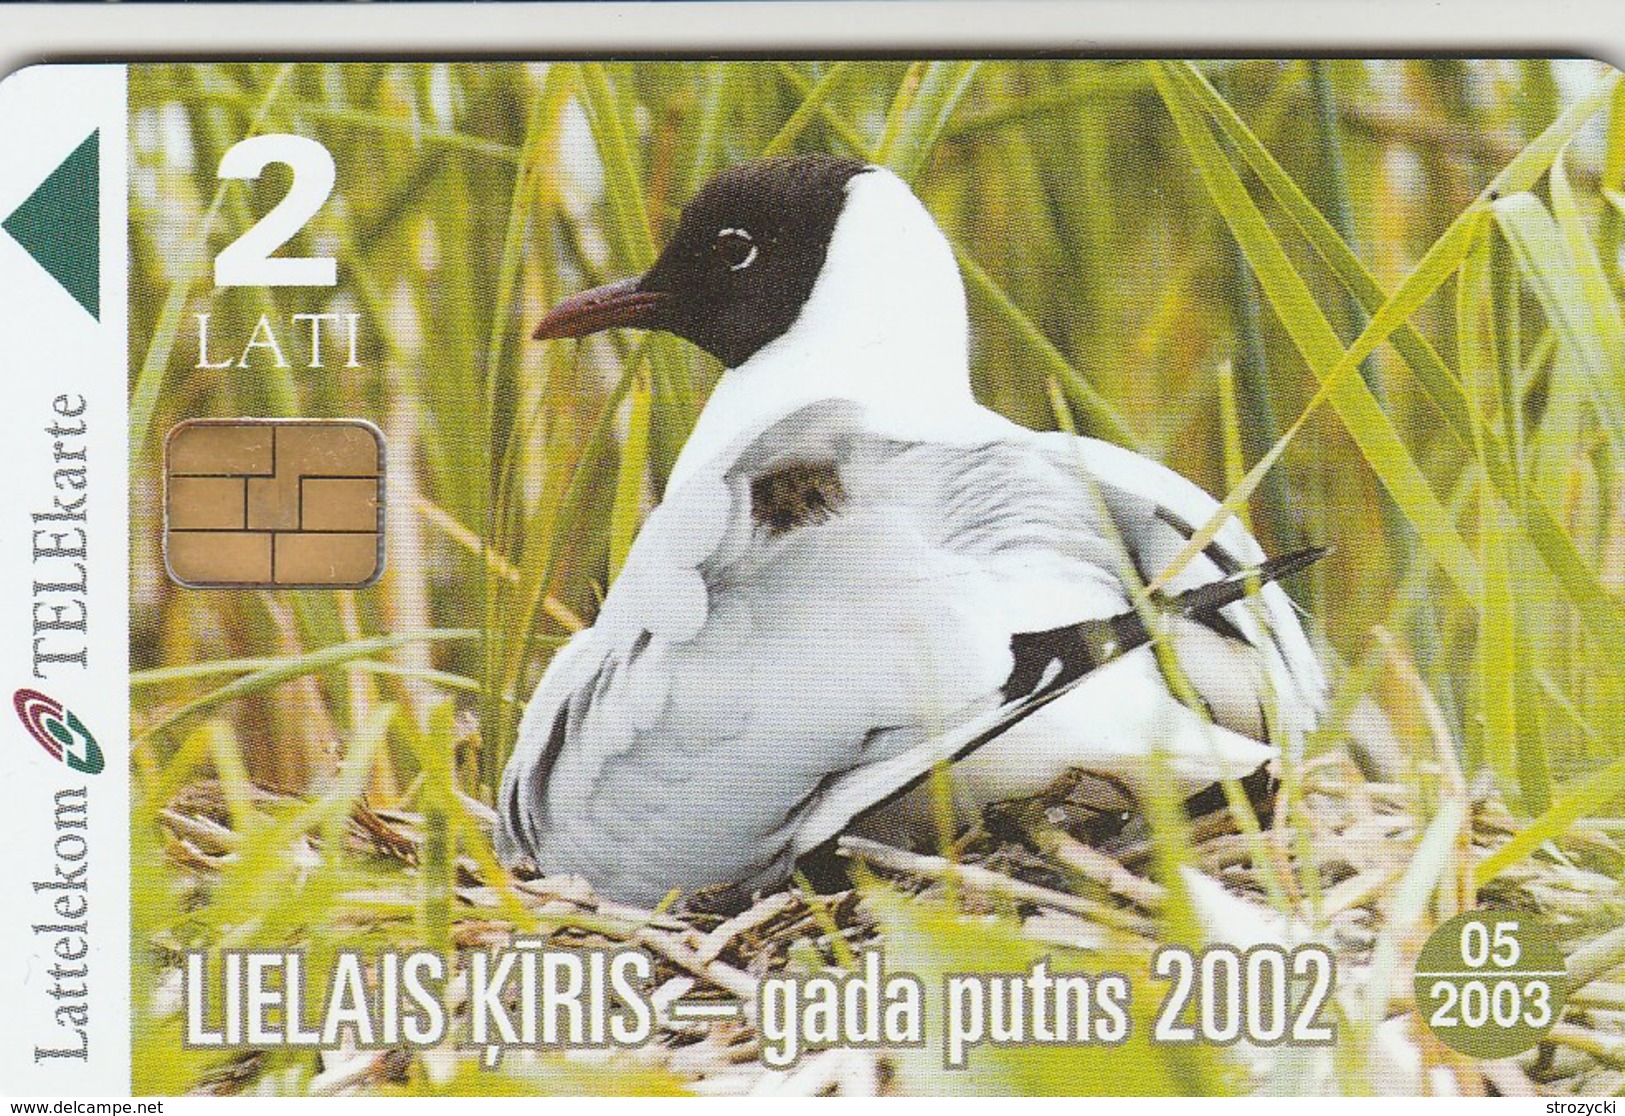 Latvia - Black-headed Gull - The Bird Of The Year 2002 - Latvia